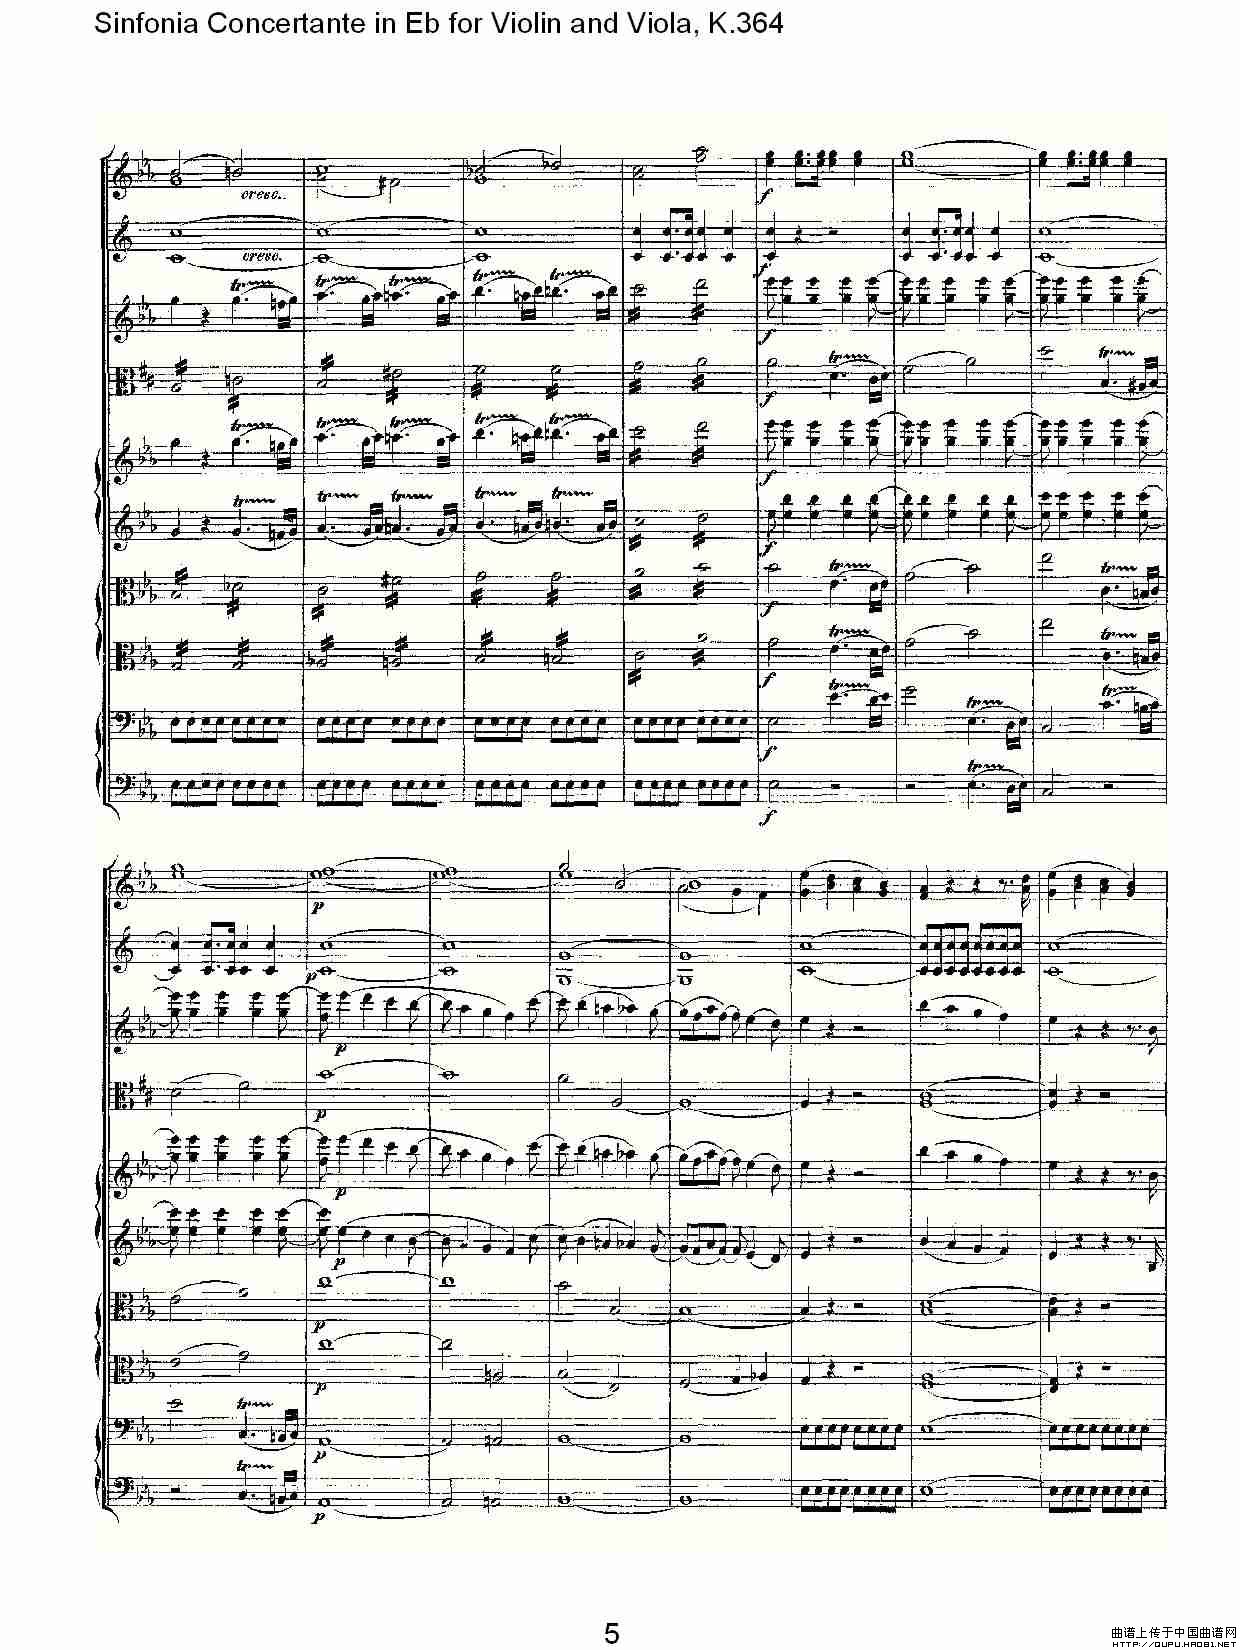 Eb调小提琴与中提琴炫技序曲, K.364（一）